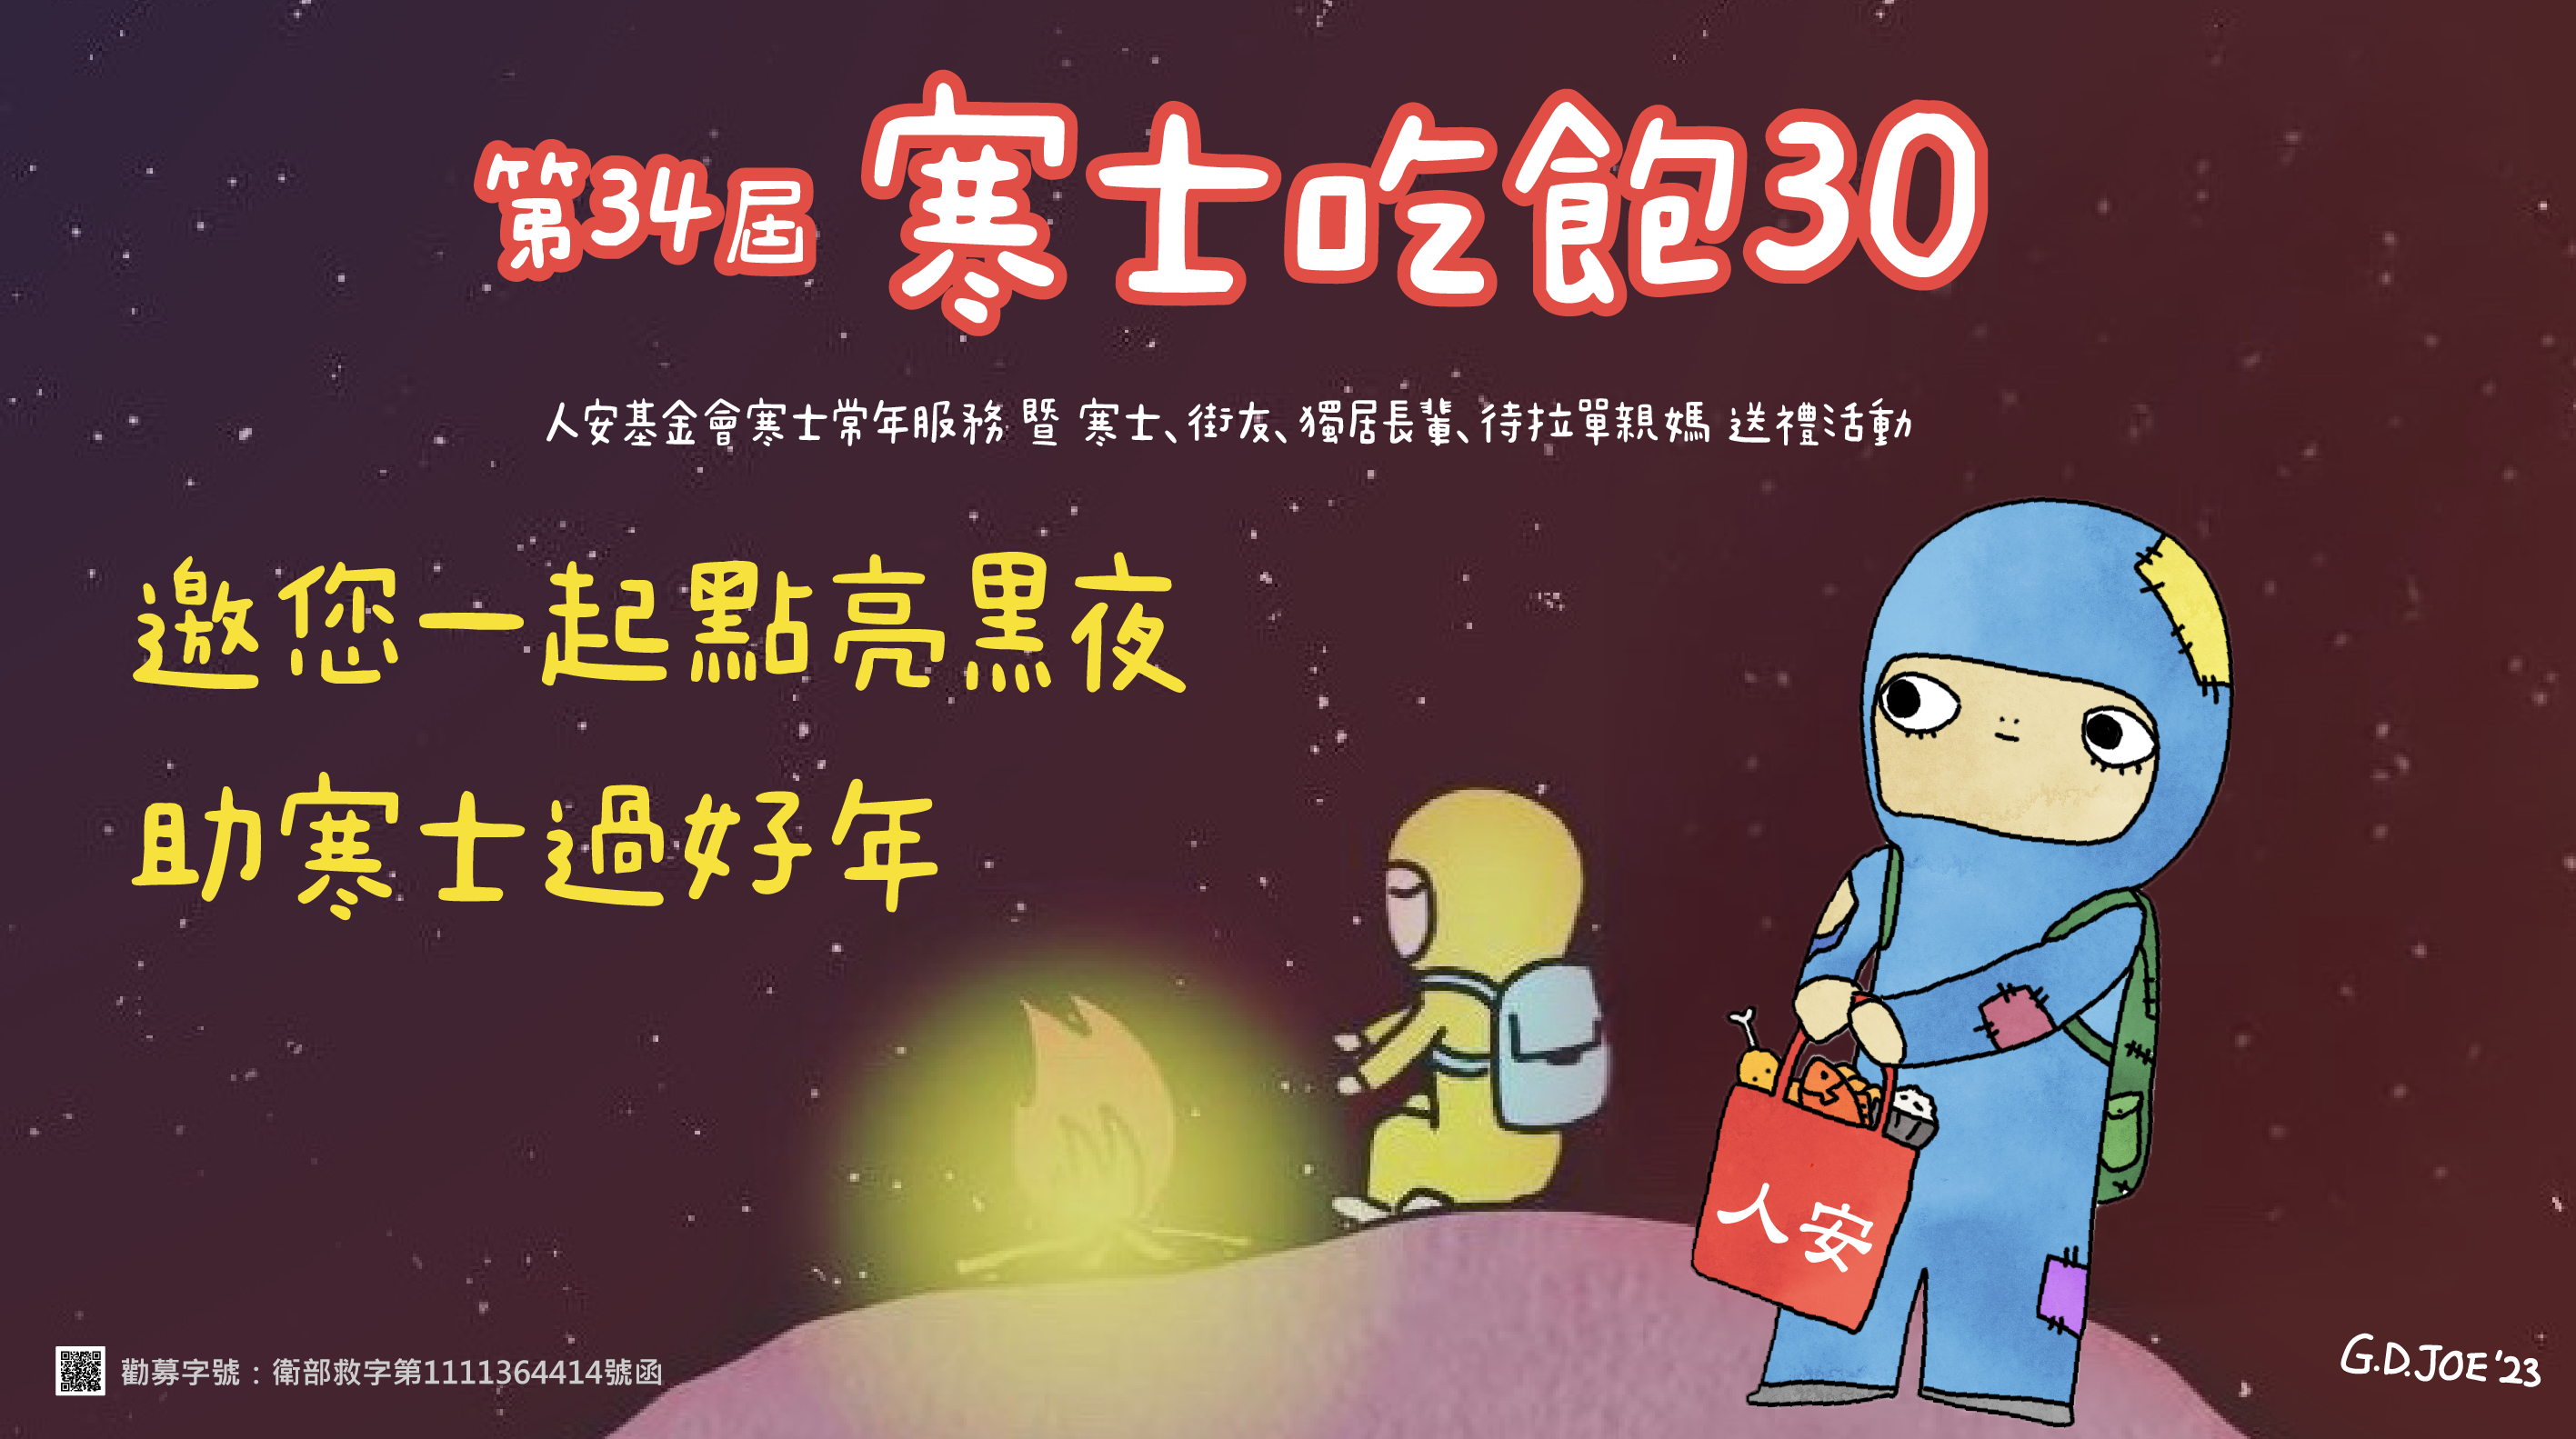 台南平安站「第34屆寒士吃飽30」